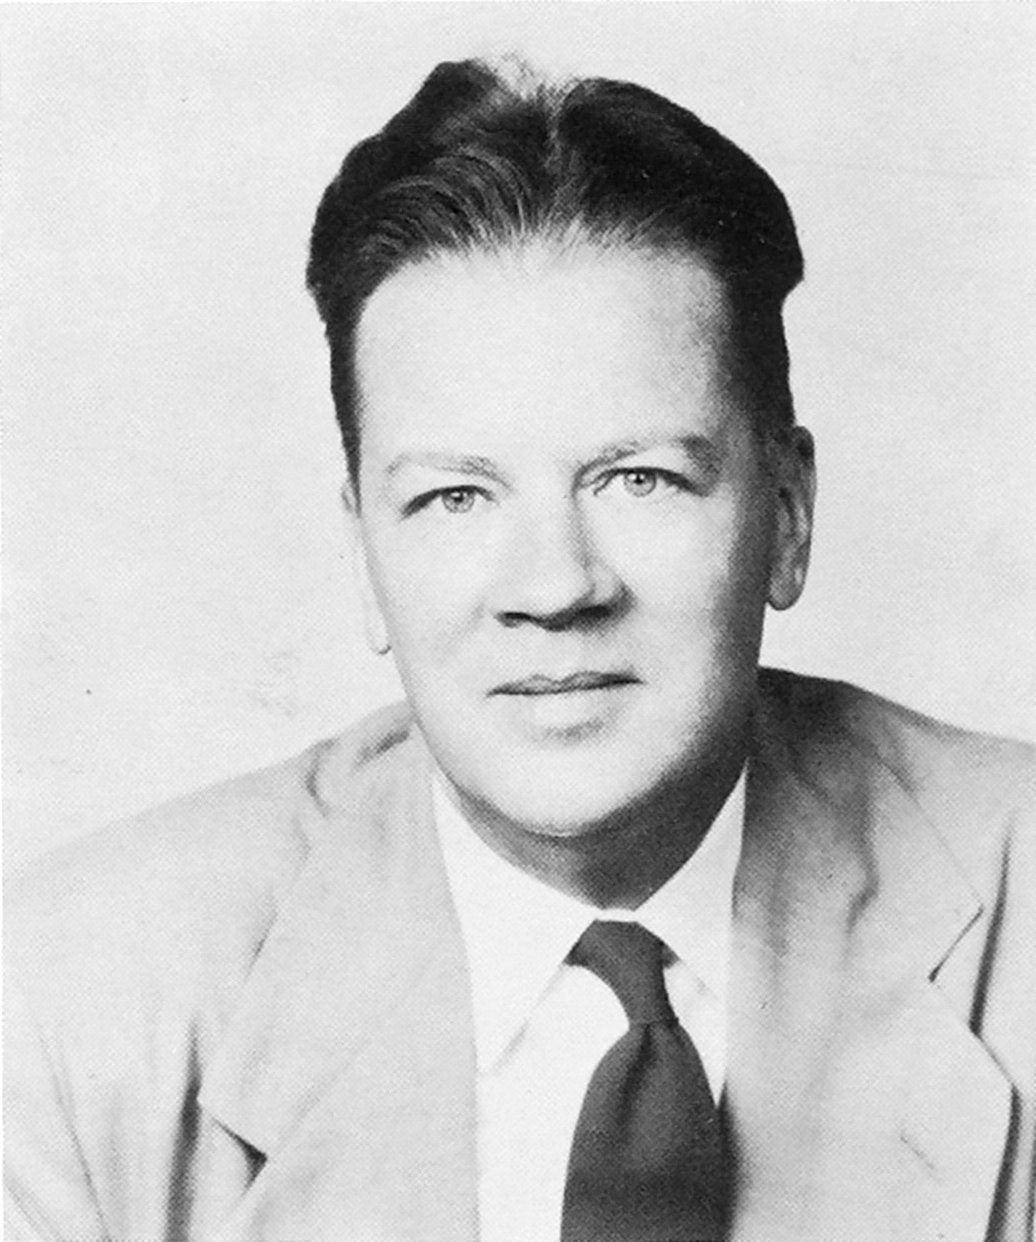 S. Reid Warren, Jr., c. 1940